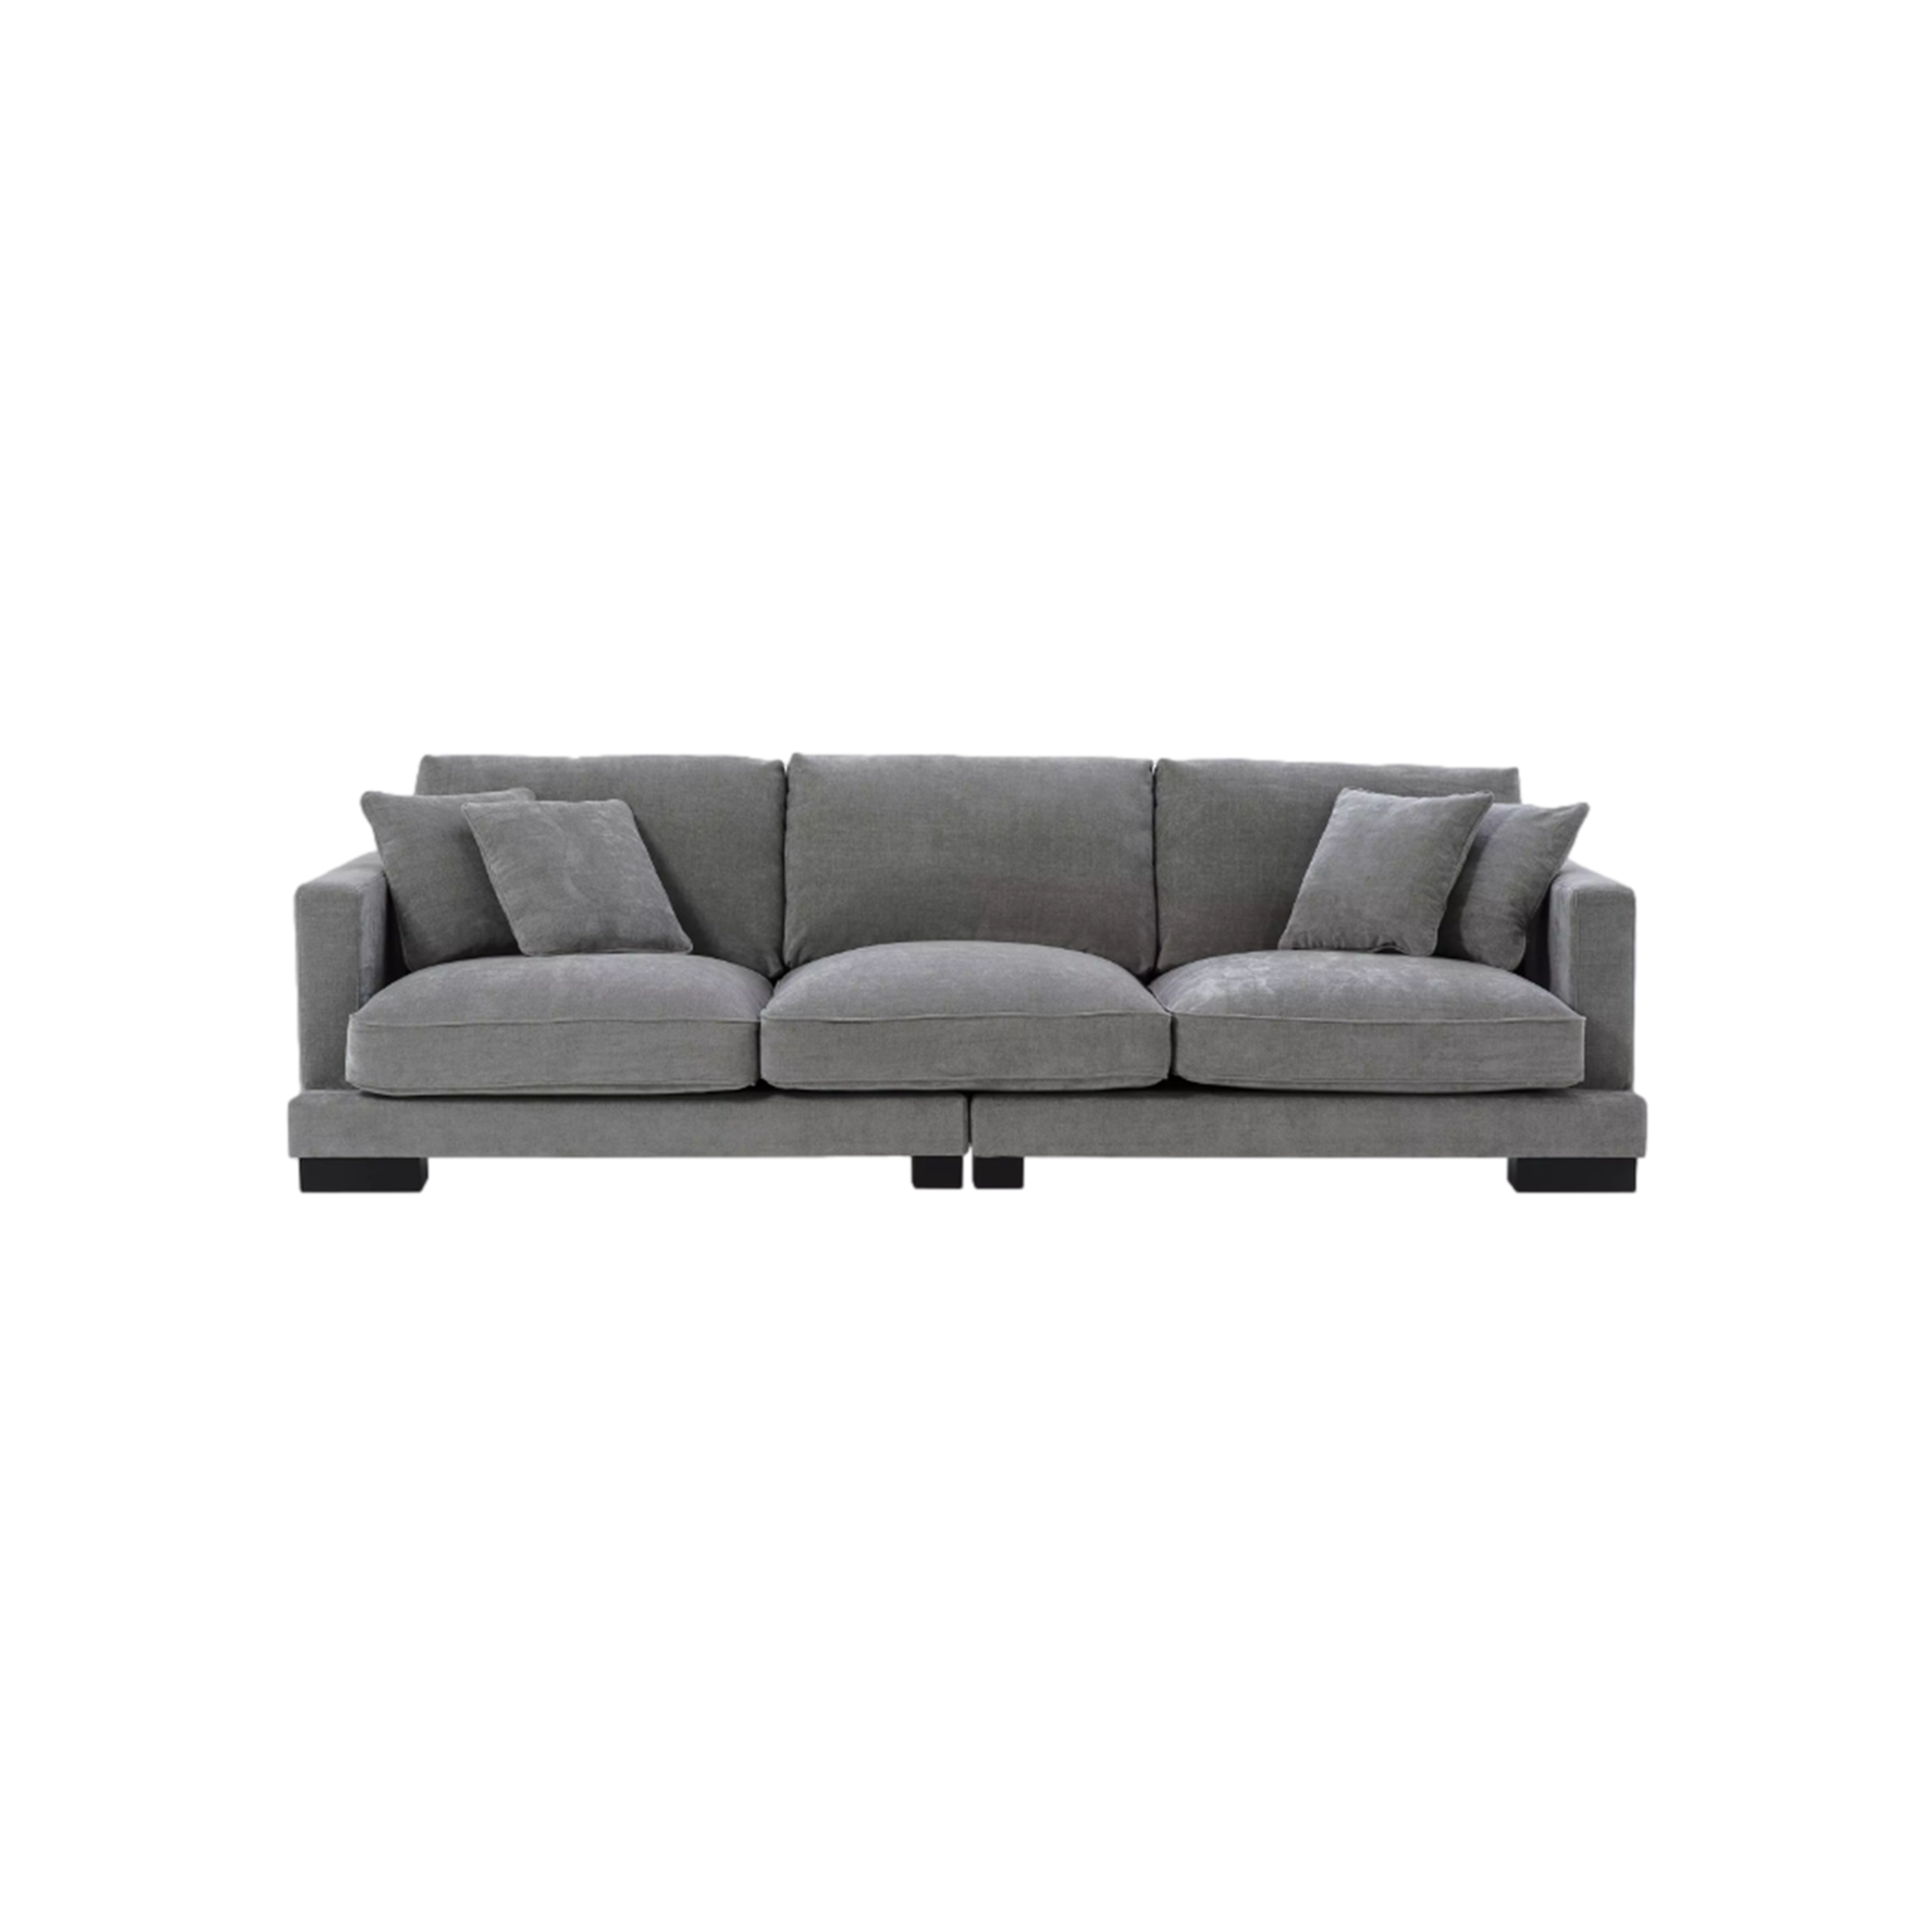 Tuscany Sofa (Grey)